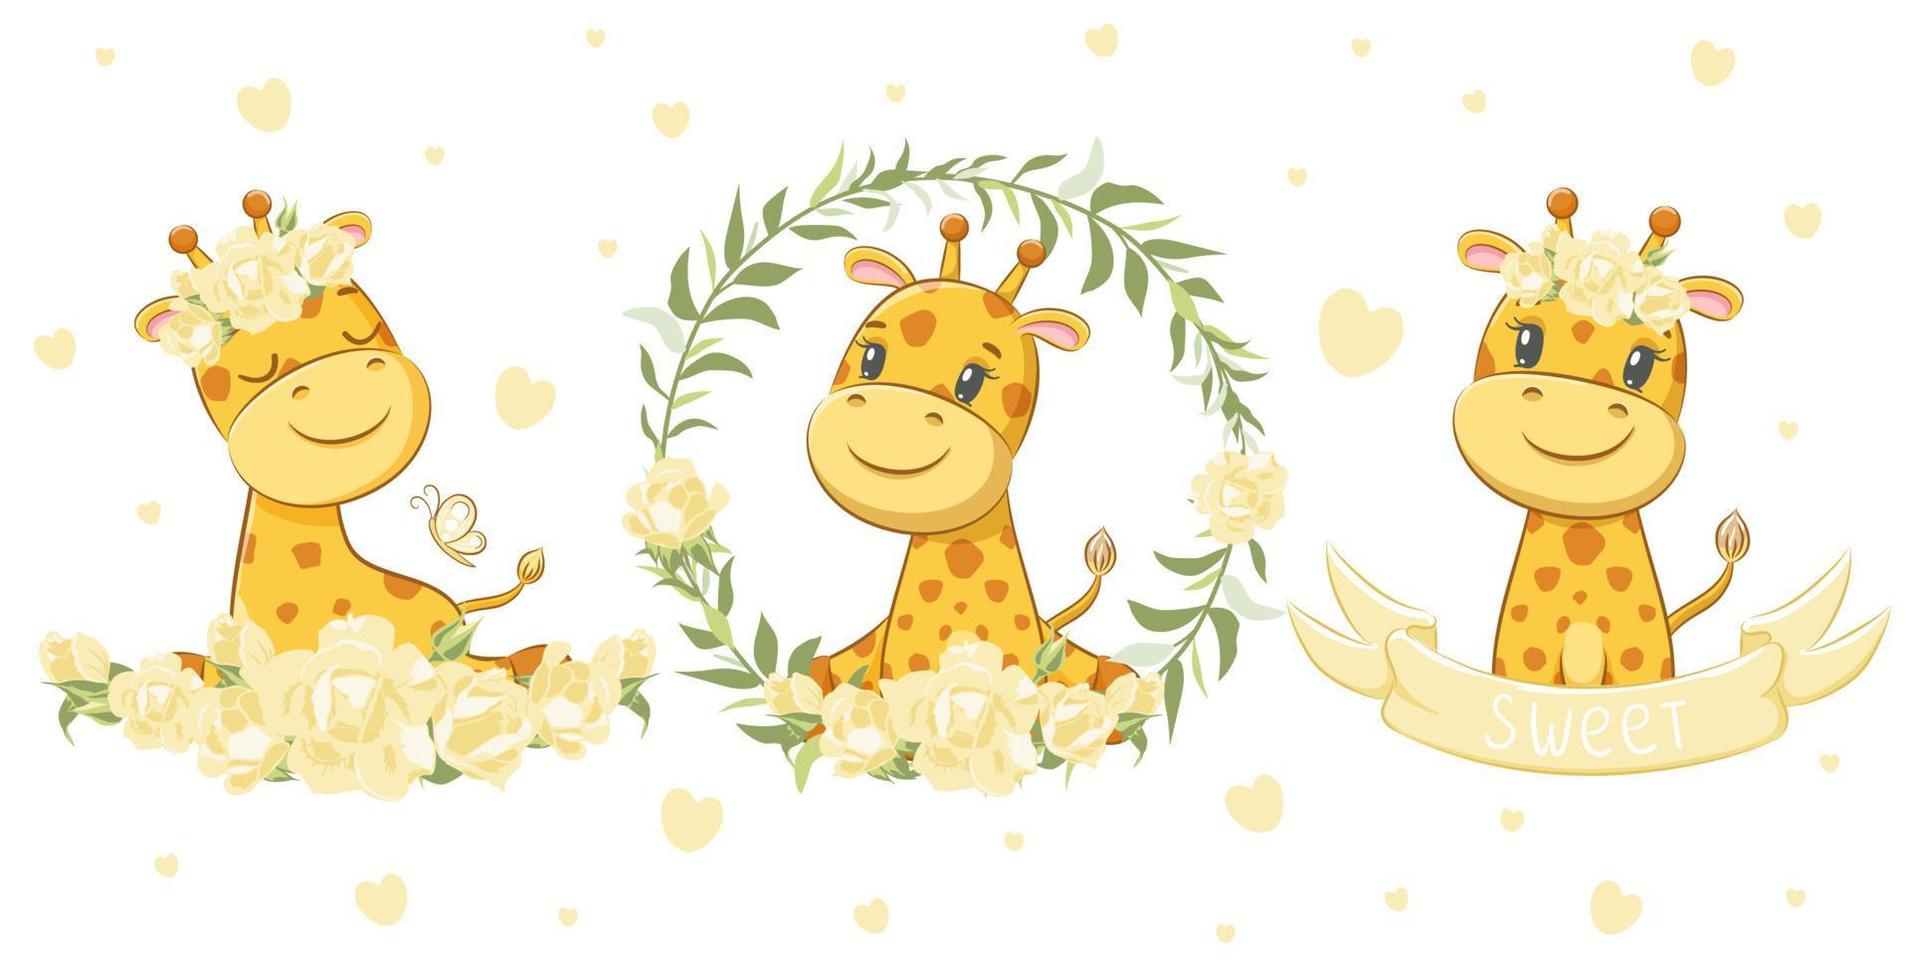 um conjunto de 3 girafas fofas e doces. ilustração em vetor de um desenho animado.